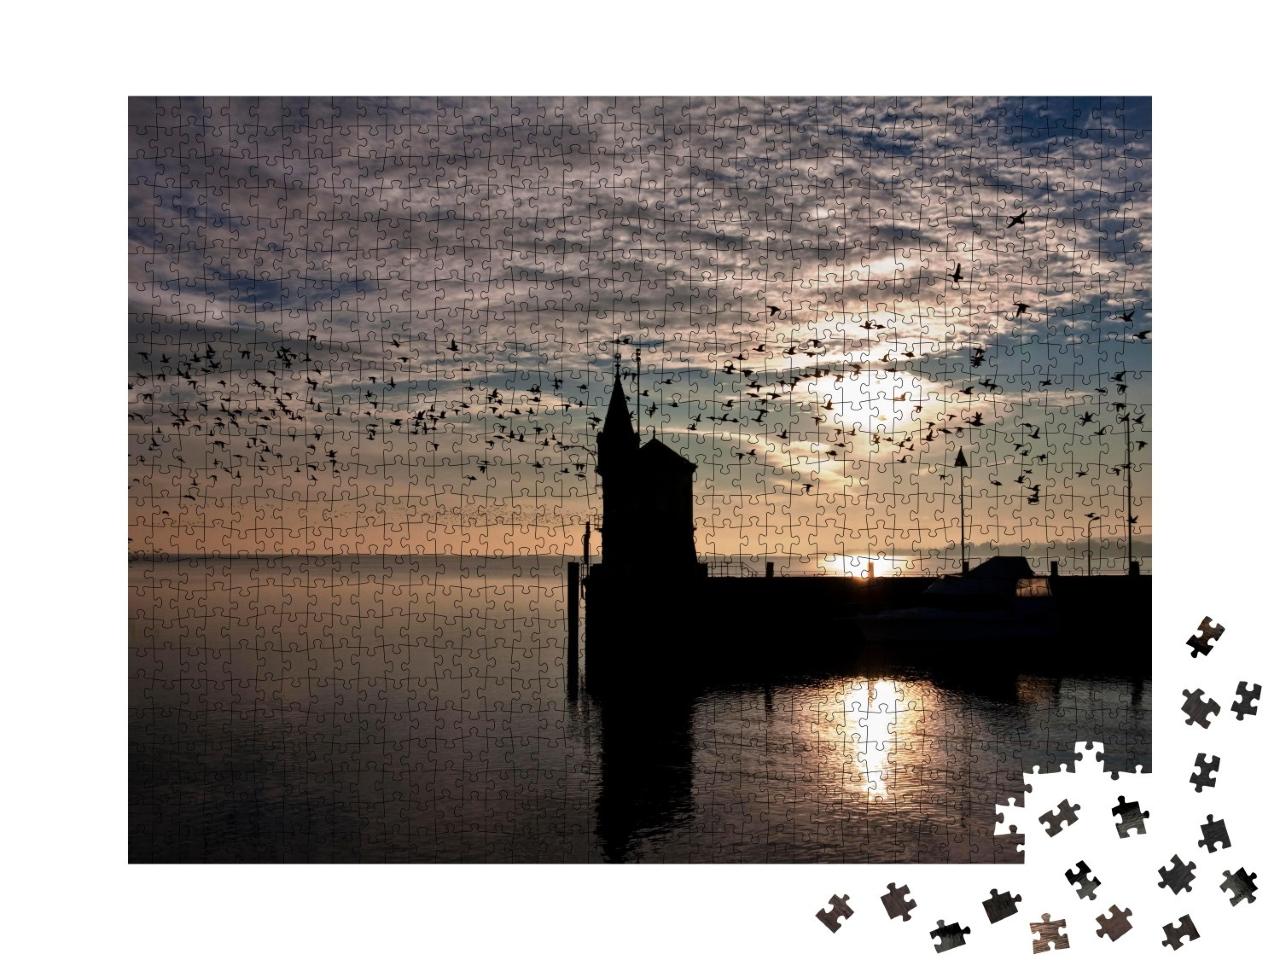 Puzzle de 1000 pièces « Entrée du port de Constance au lever du soleil, lac de Constance, Allemagne »